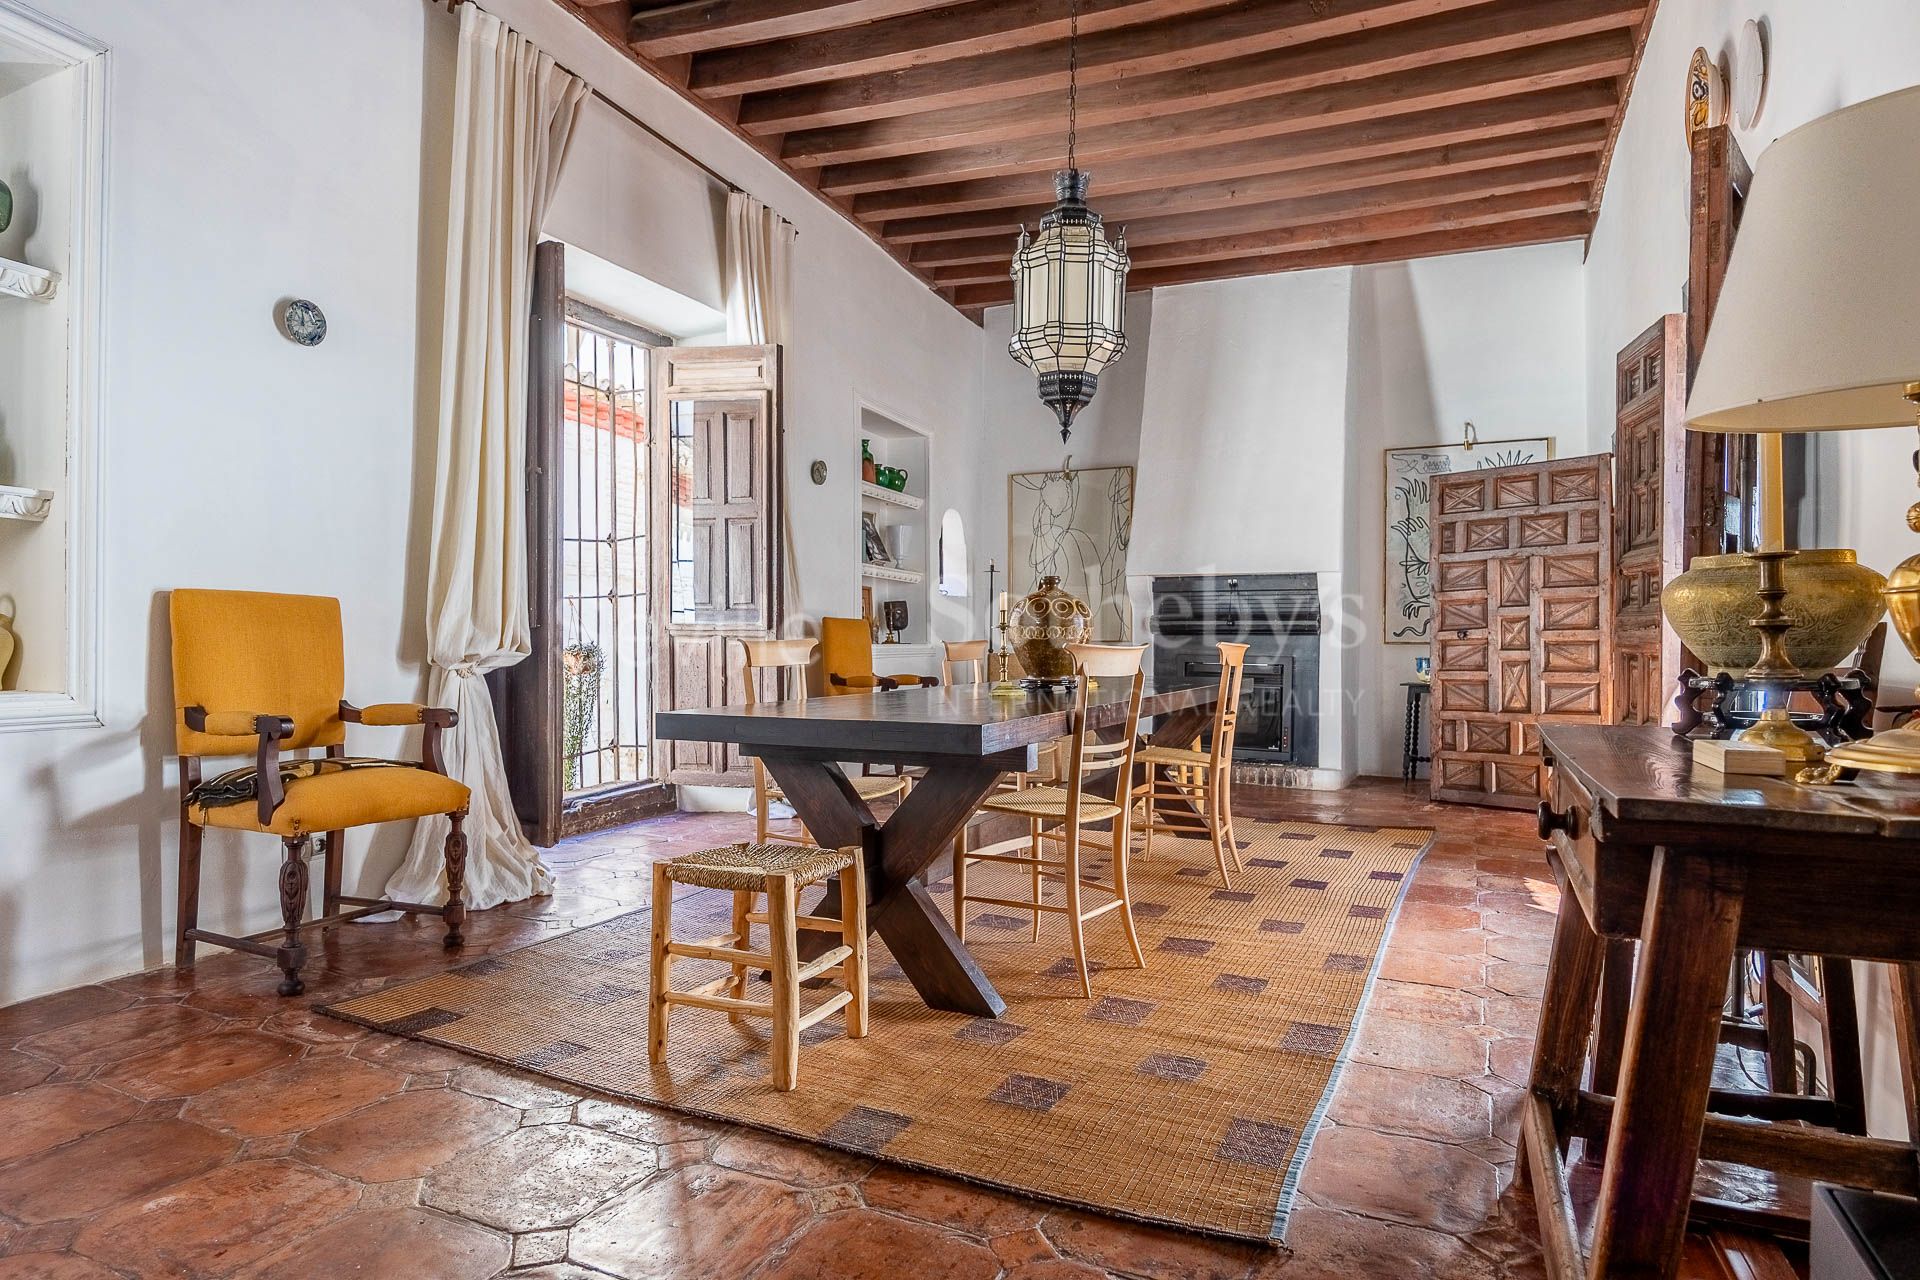 Encantadora vivienda en el corazón del barrio de Albaicín en Granada.